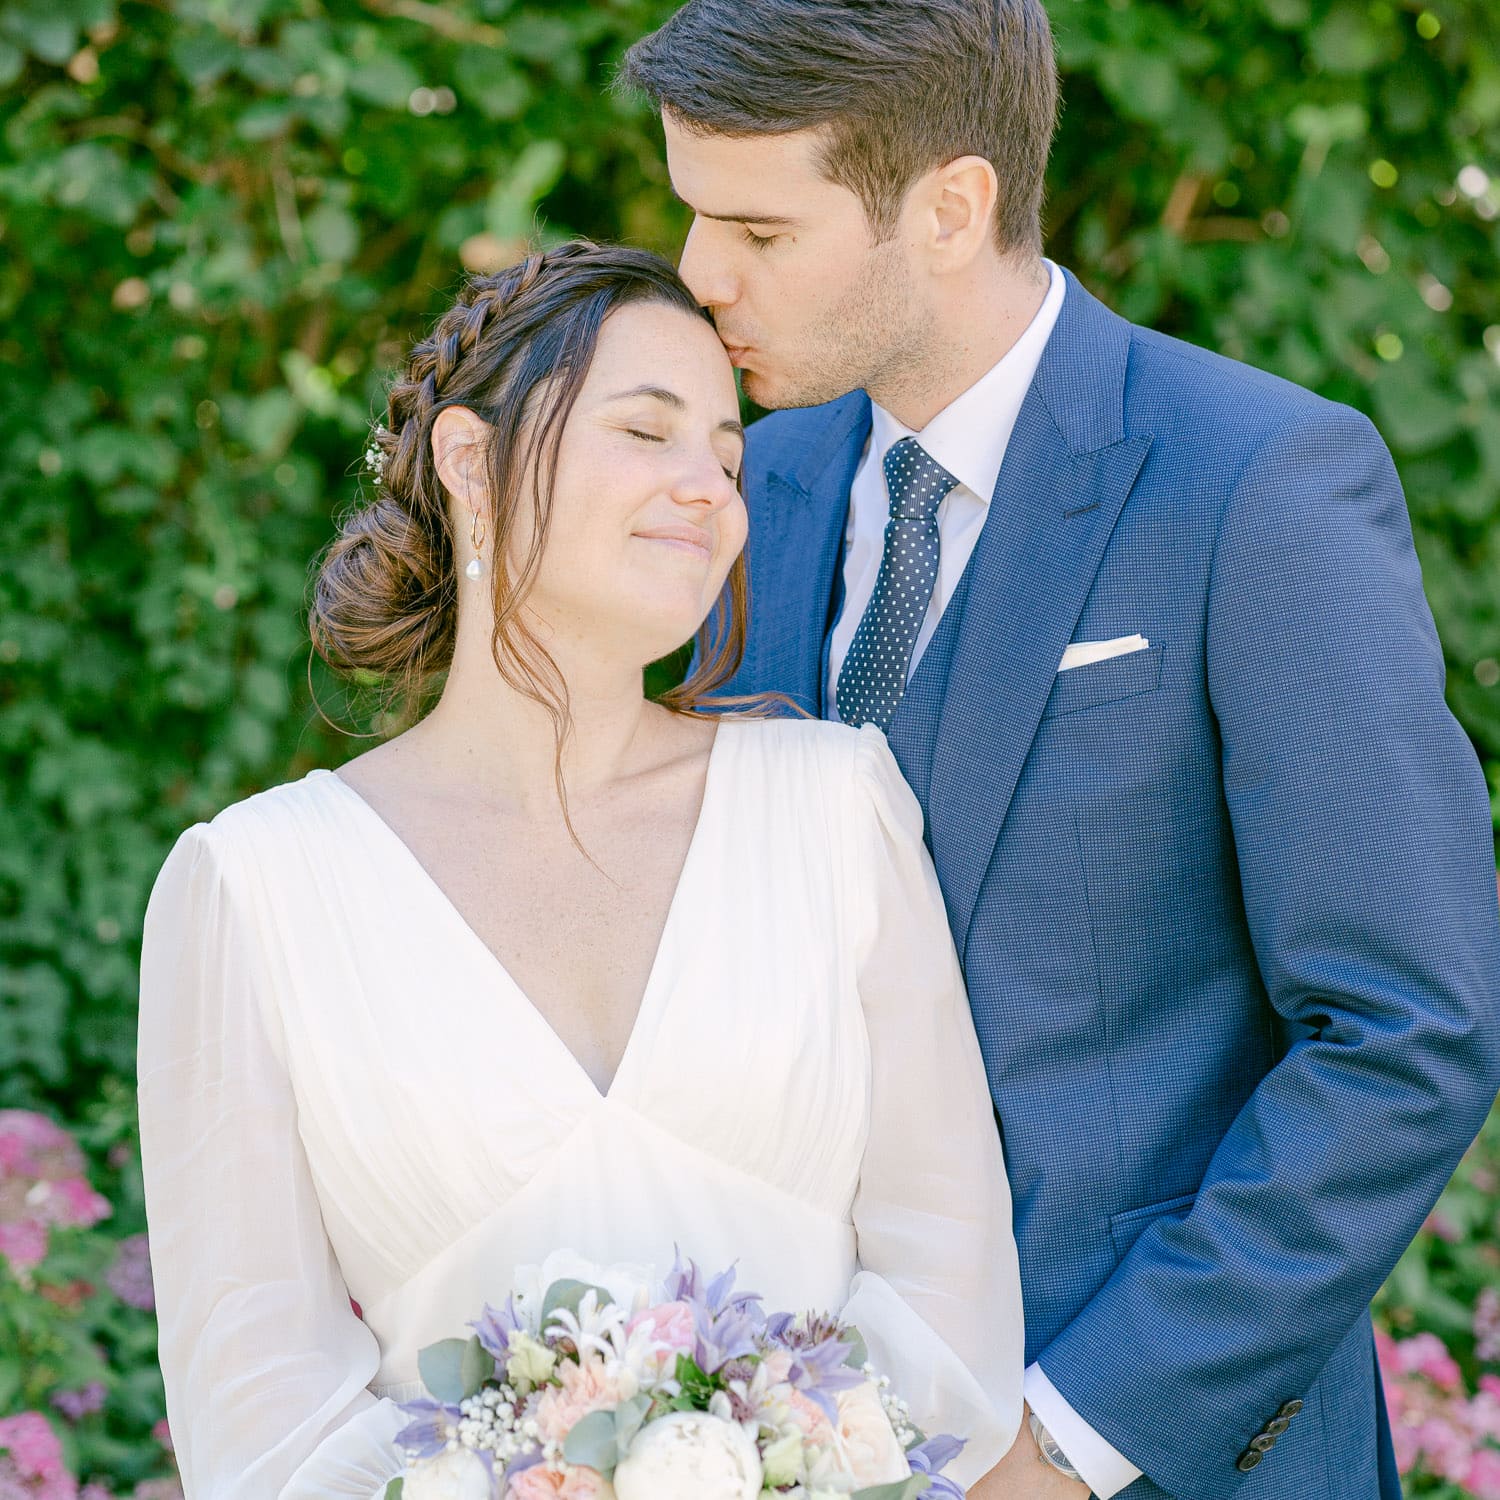 Link zur Instagram Seite von Mona Silja mit Hochzeitsfoto gepostet auf Instagram